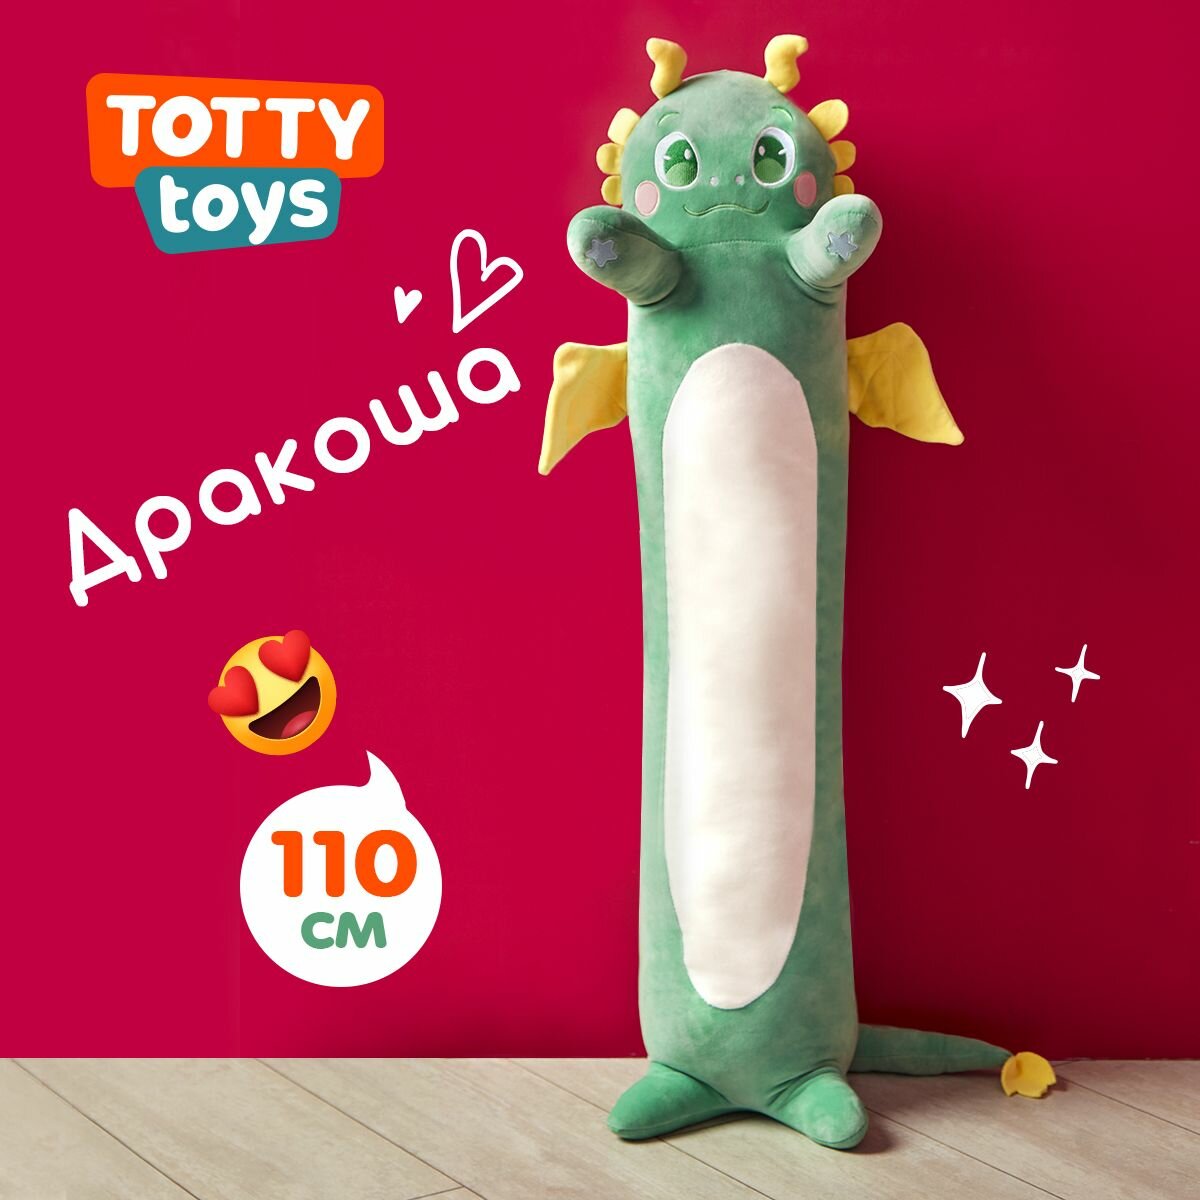 Мягкая игрушка Totty toys Дракон-батон, 110 см, зелёный